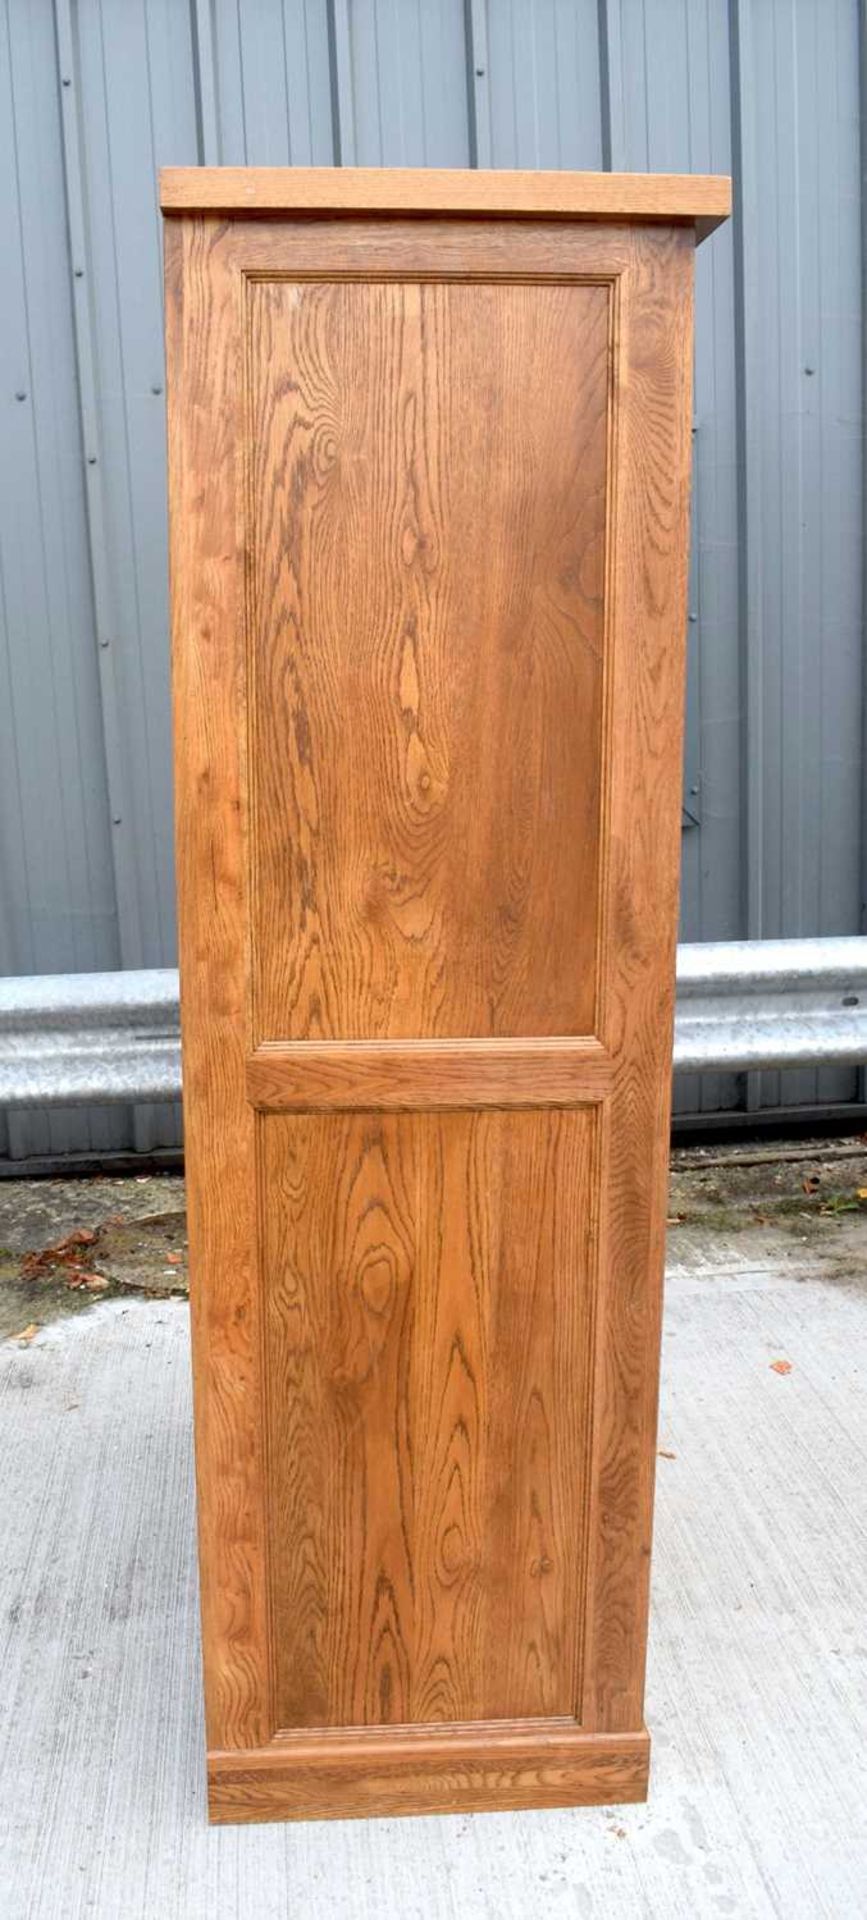 An oak wardrobe 193 x 107 x 56cm. - Image 3 of 4